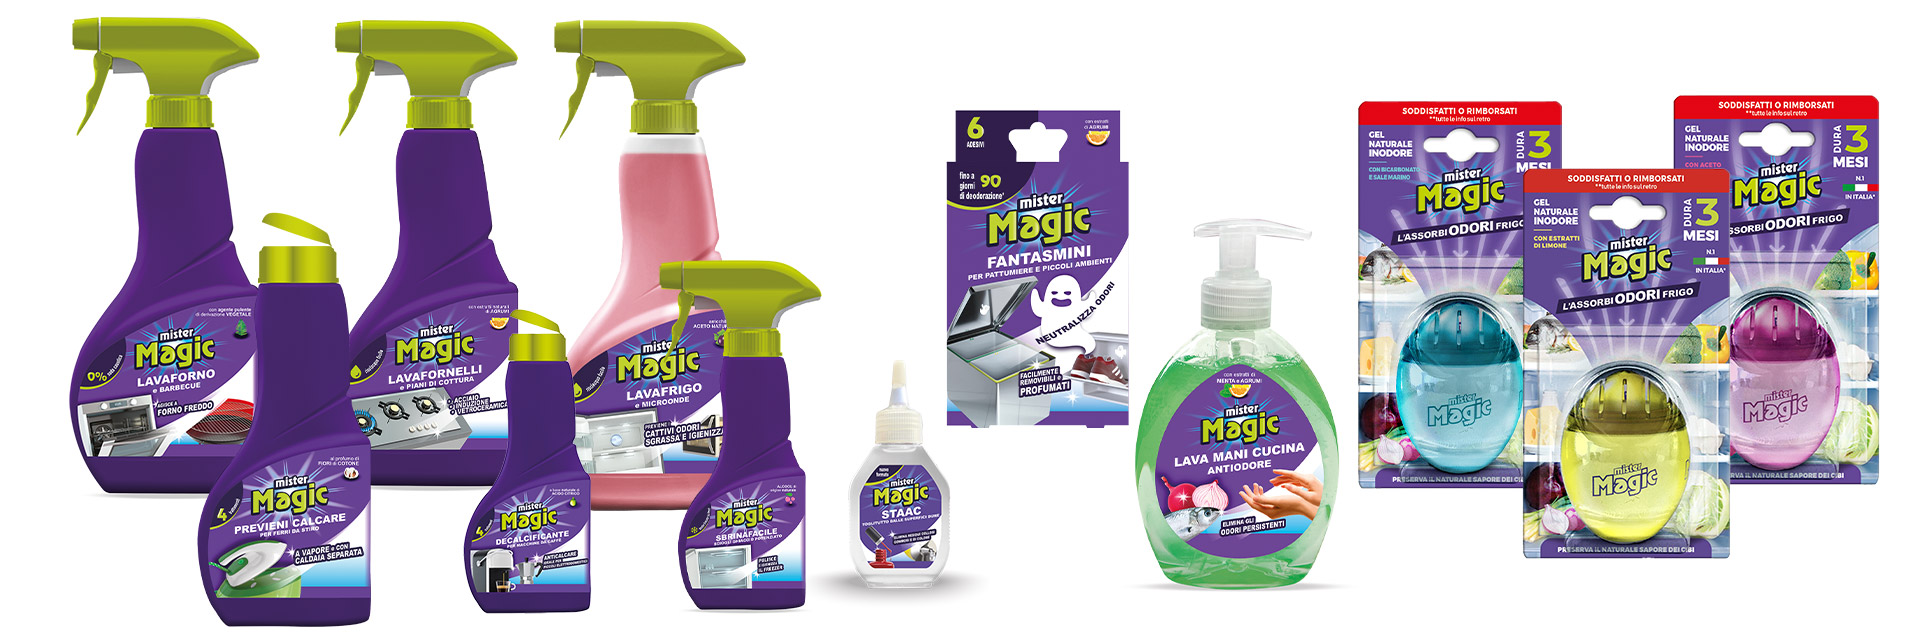 Mister Magic®: la linea dei prodotti.